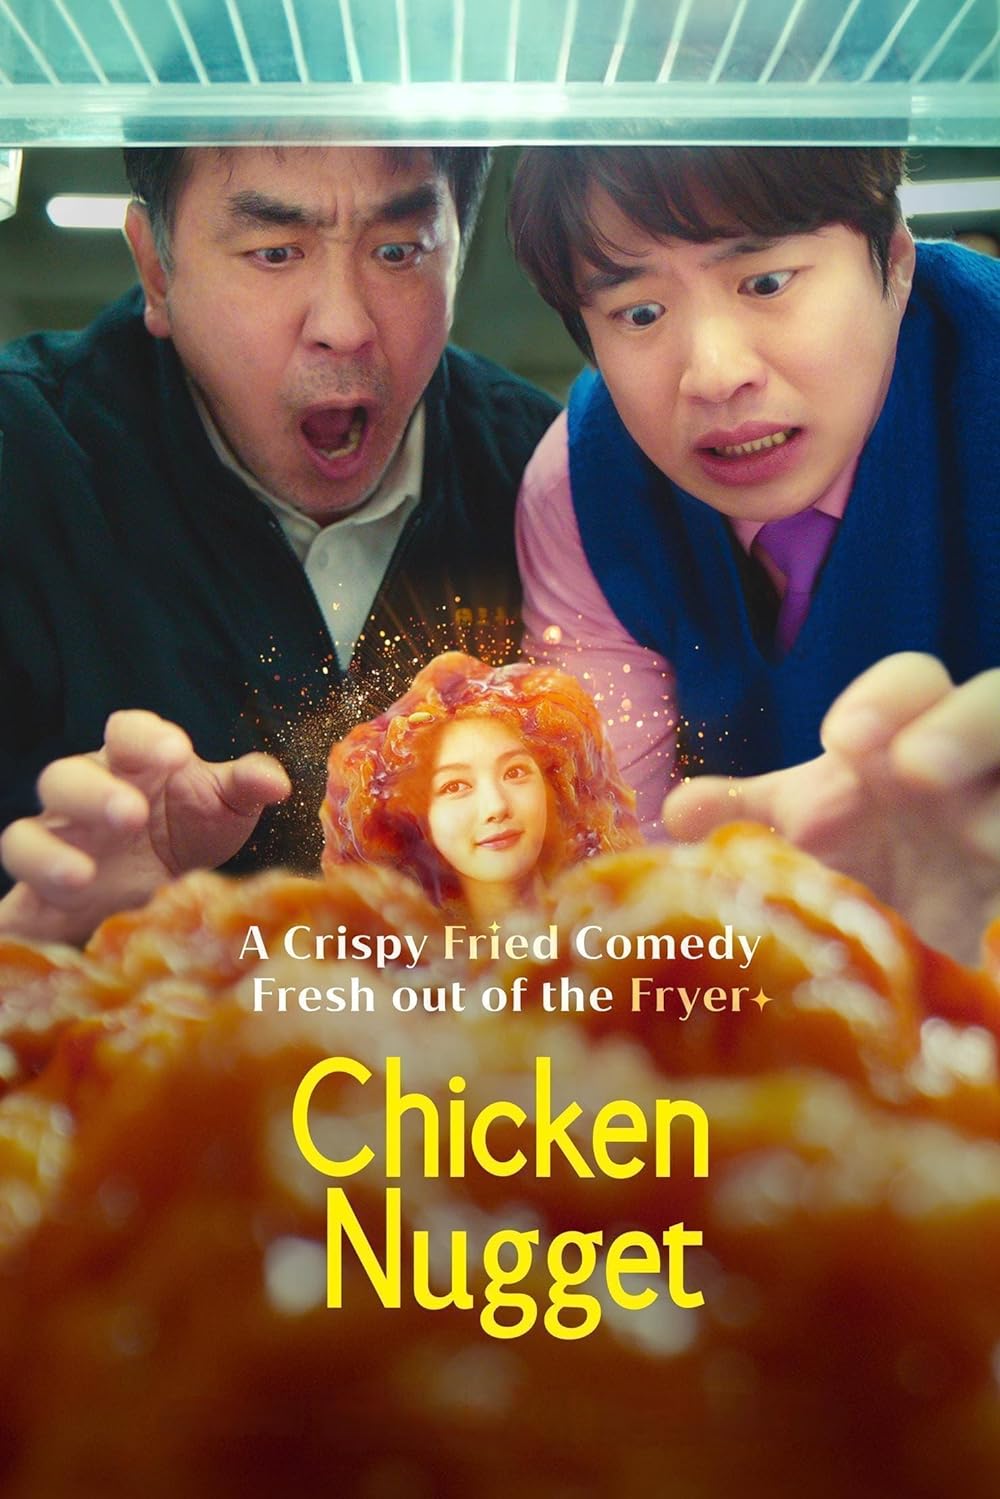 ซีรีส์เกาหลีแนวคอมมาดี้แฟนตาซี Chicken Nugget ไก่ทอดคลุกซอส